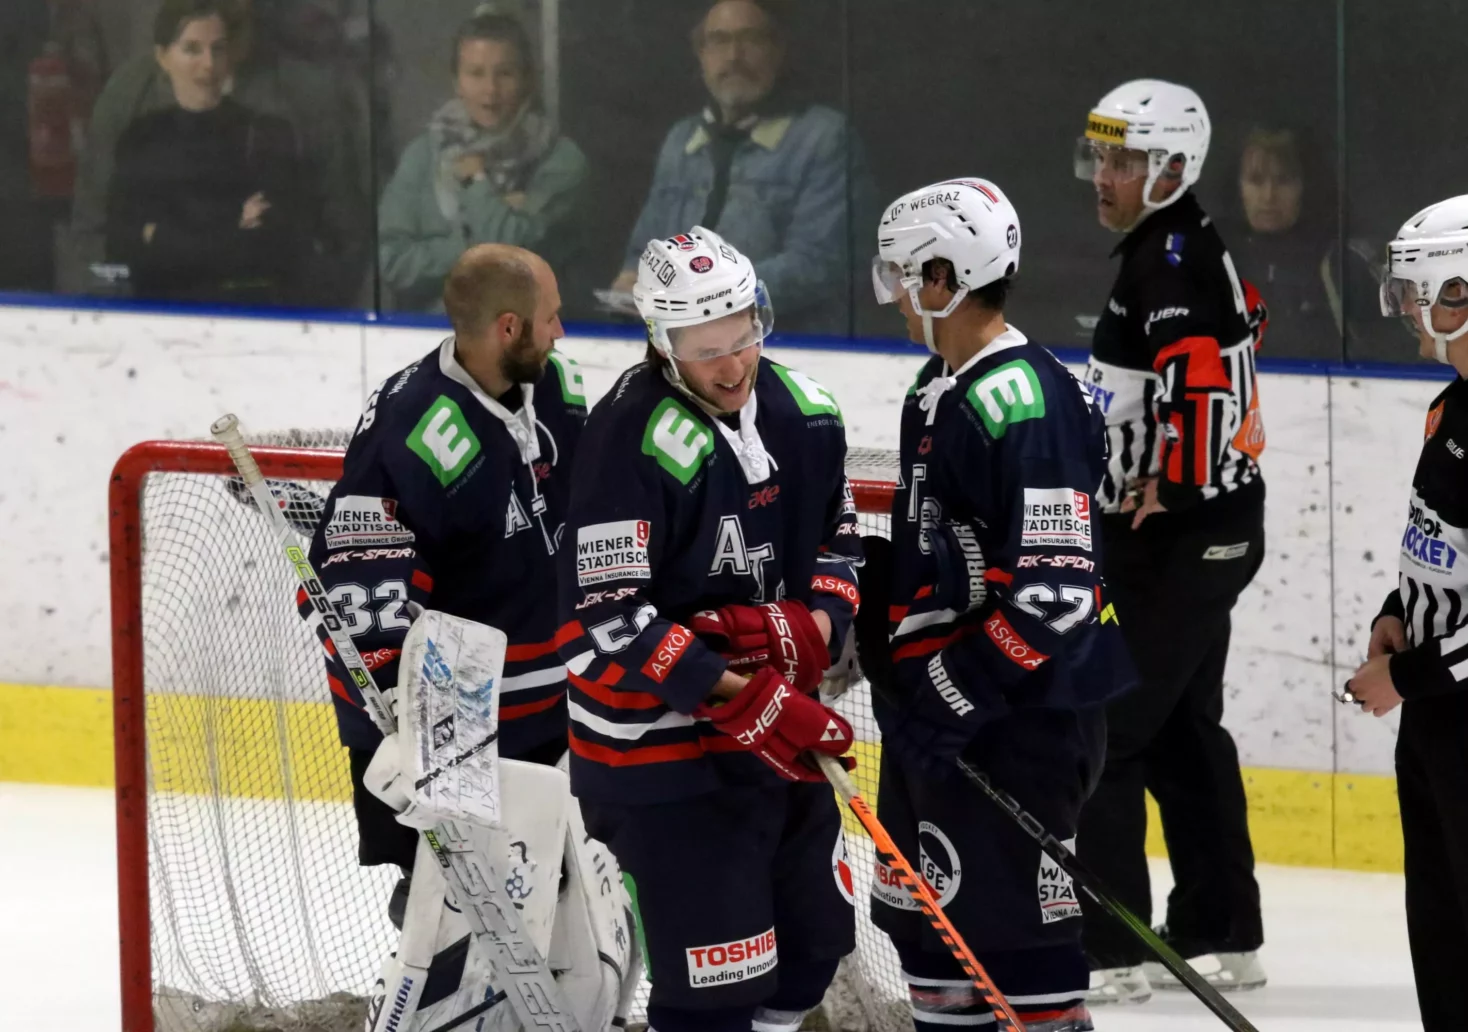 Vorfreude auf Grazer-Derby in der Österreichischen Eishockeyliga steigt!